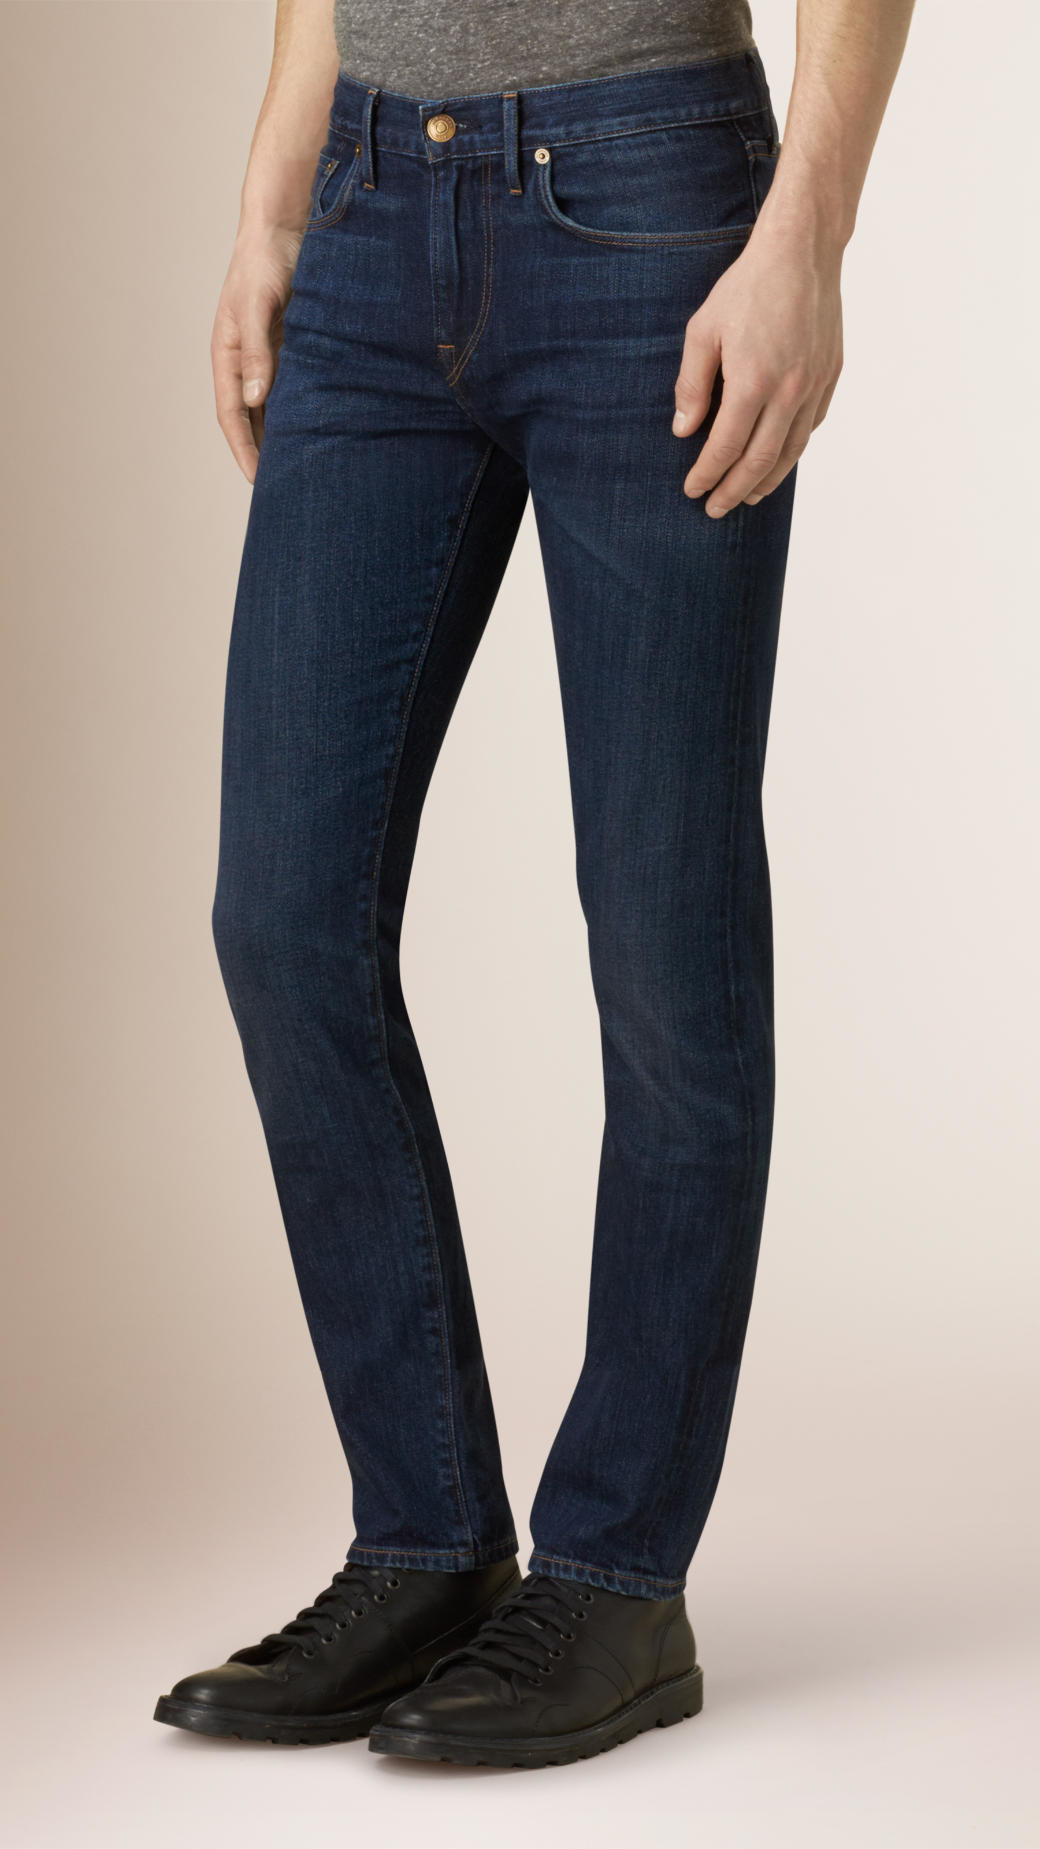 Lyst - Burberry Slim Fit Japanese Selvedge Denim Jeans in Blue for Men